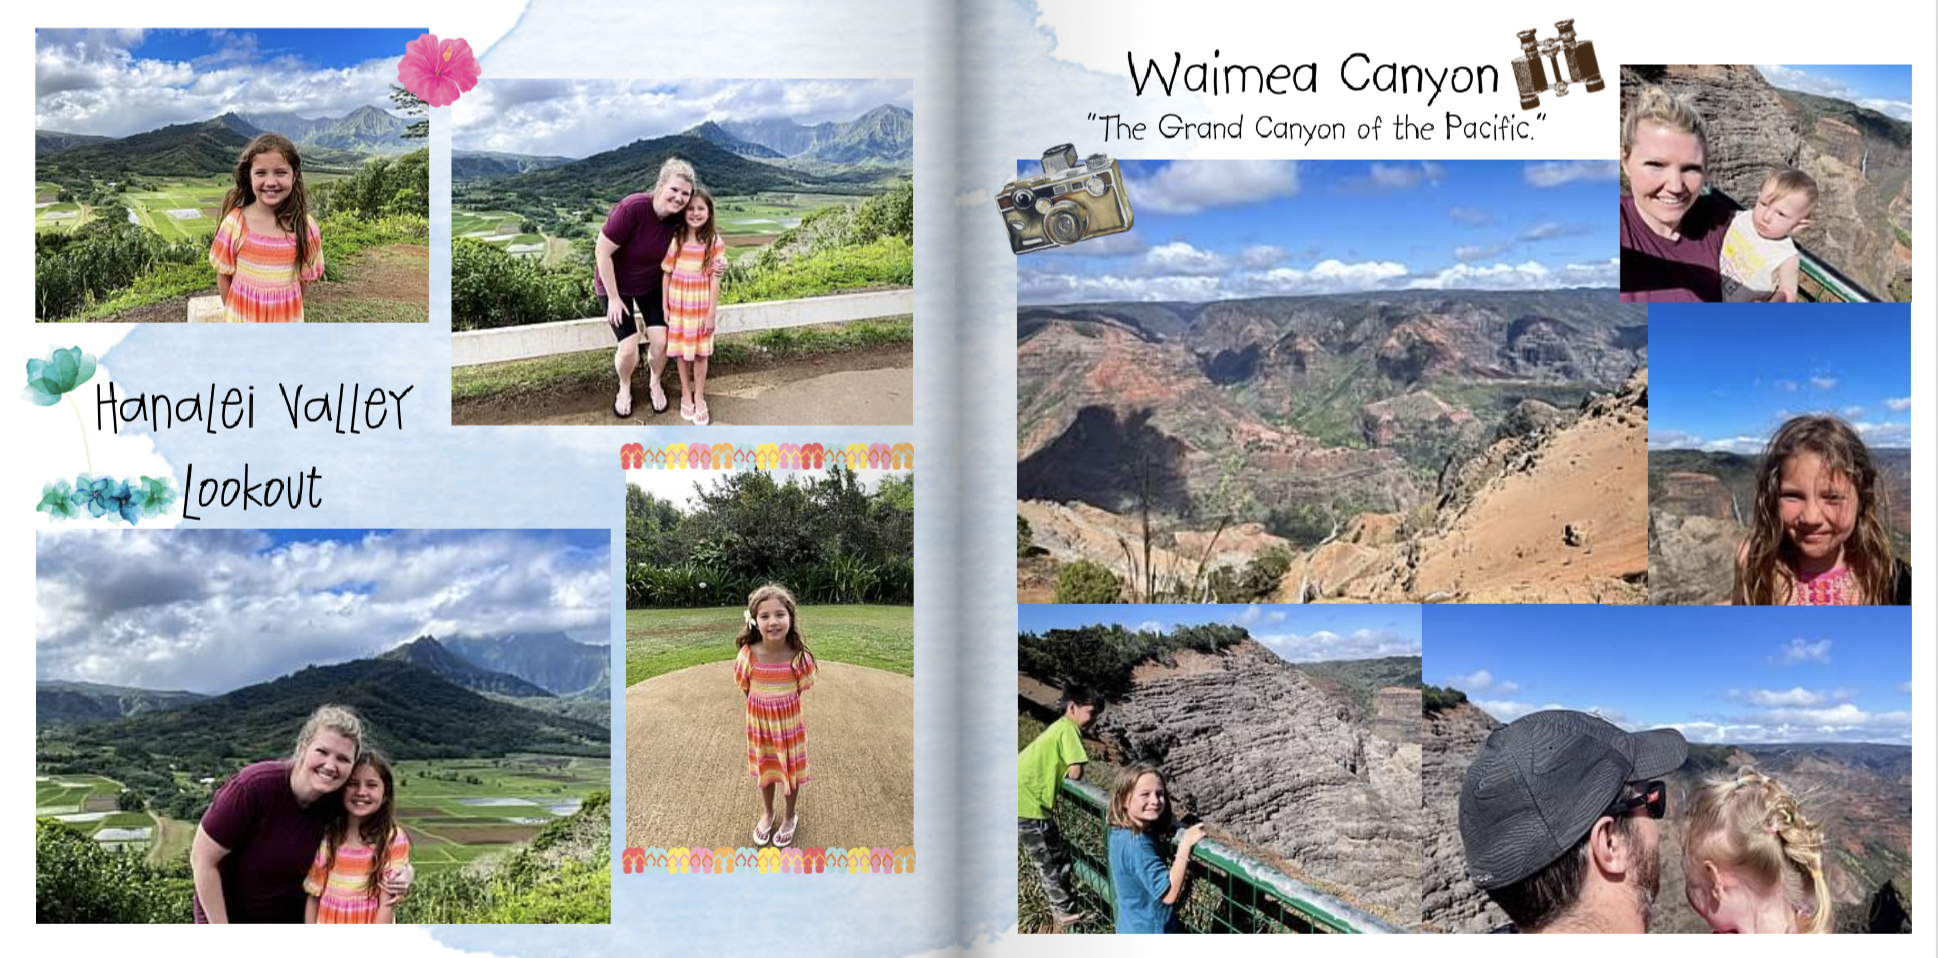 Kauai family vacation tips - Waimea Canyon